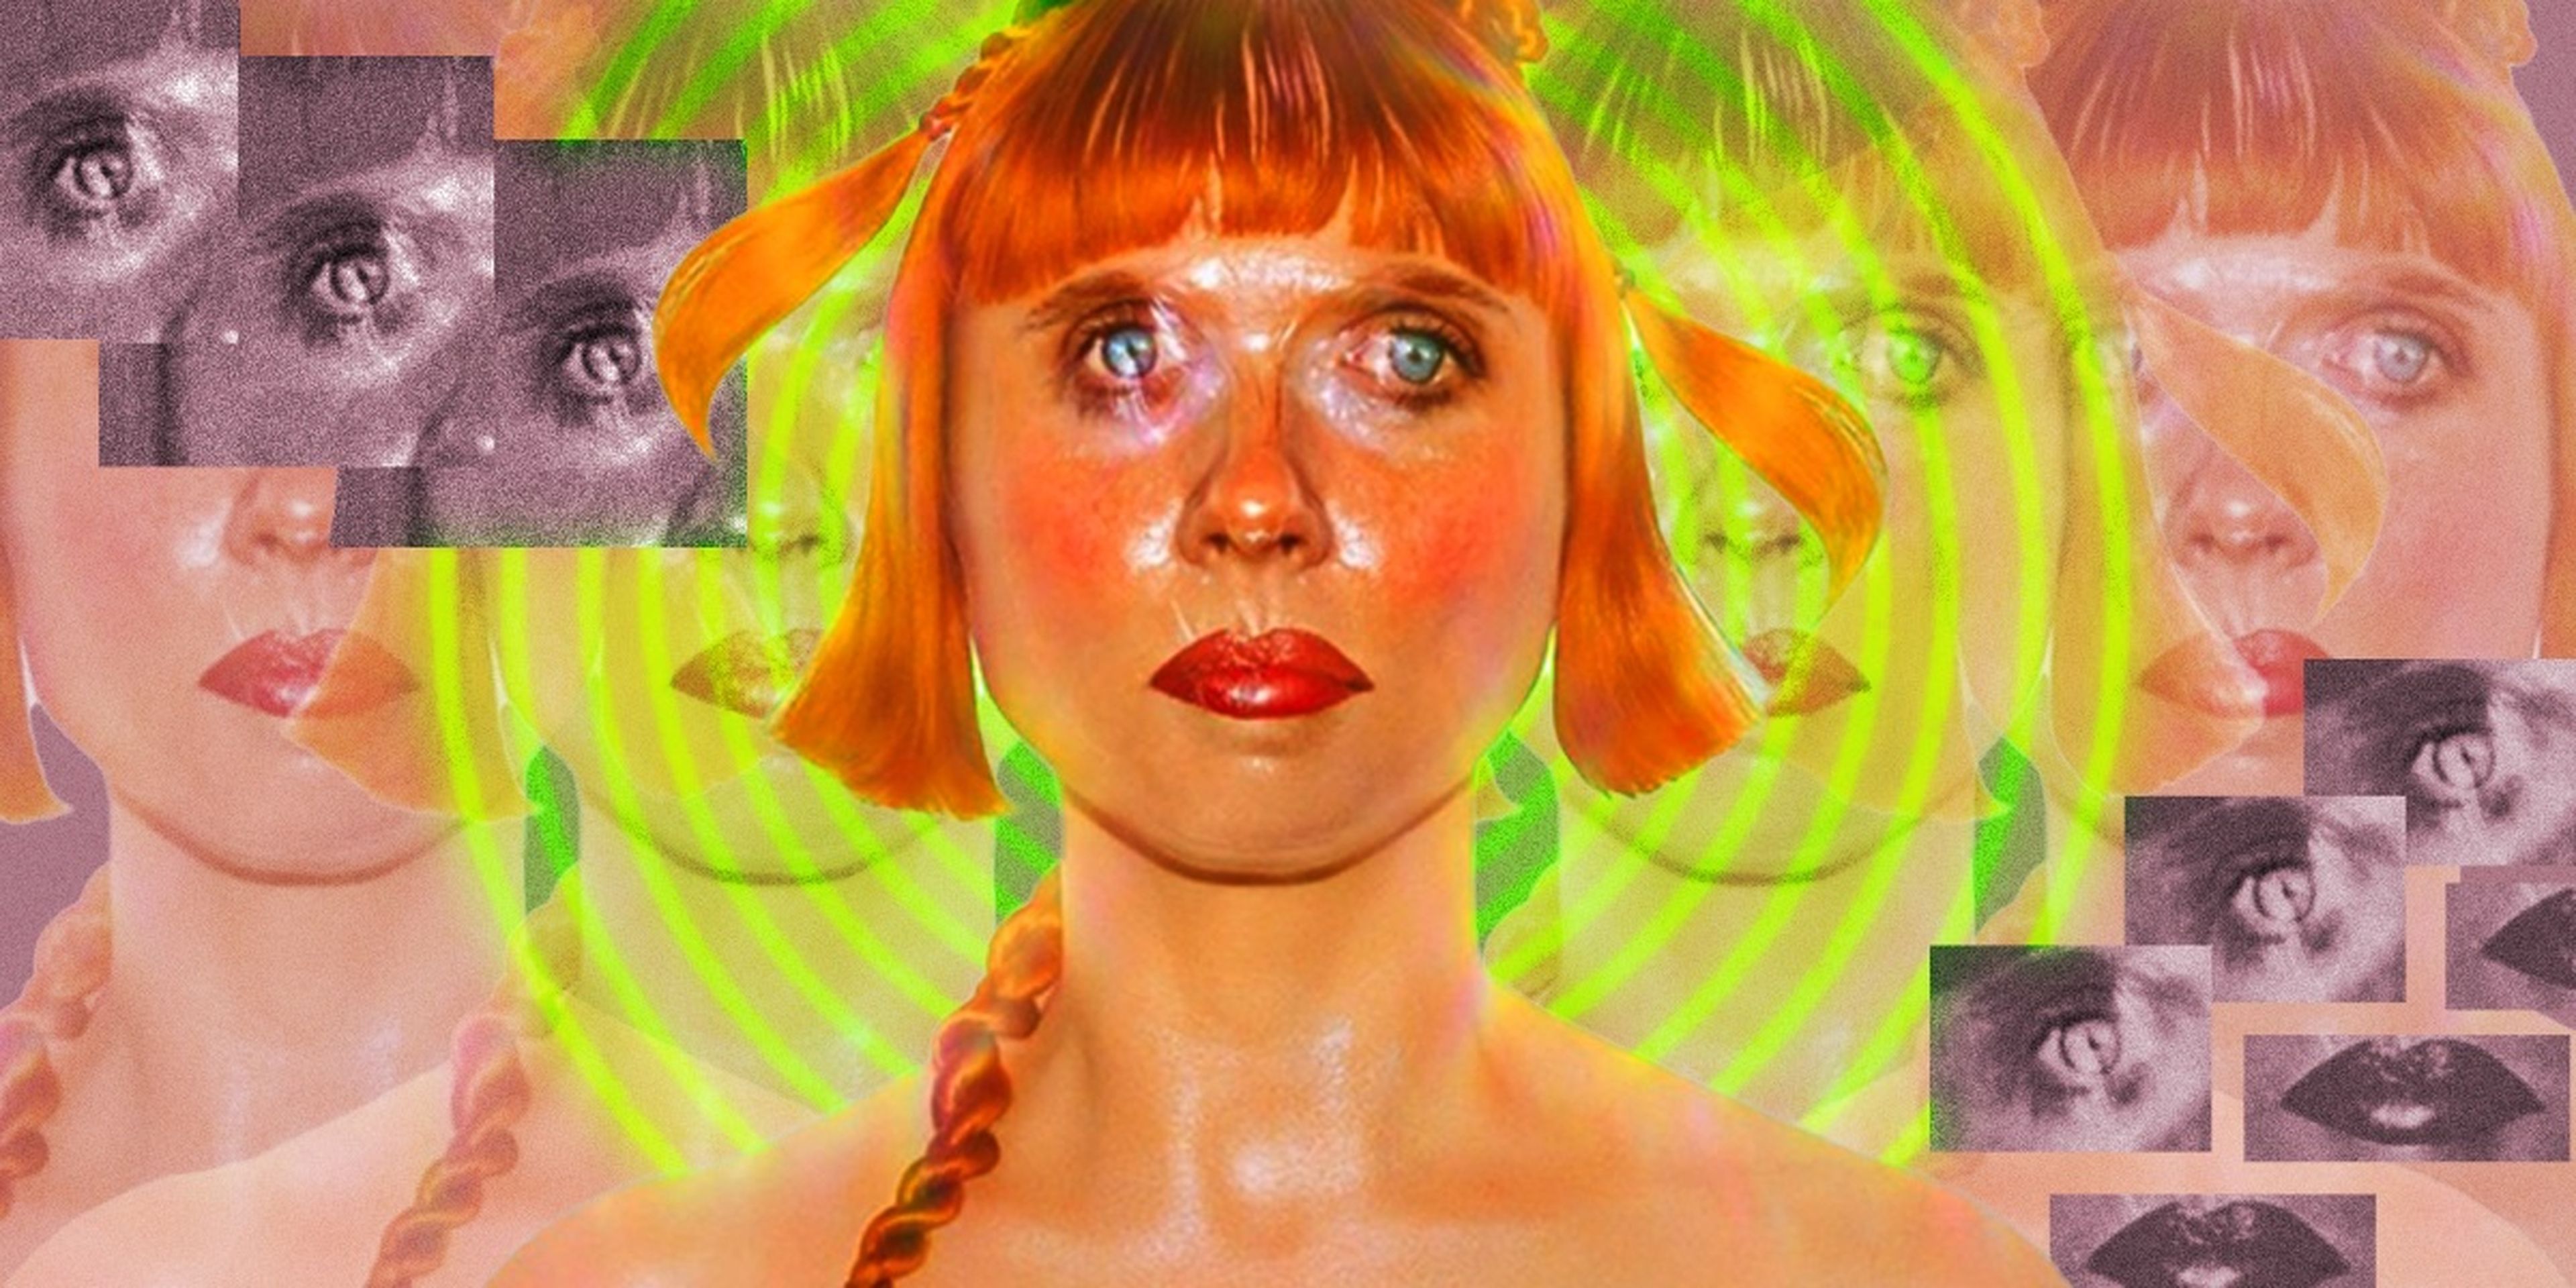 La músico y artista experimental Holly Herndon creó una gemela digital de sí misma llamado Holly+.